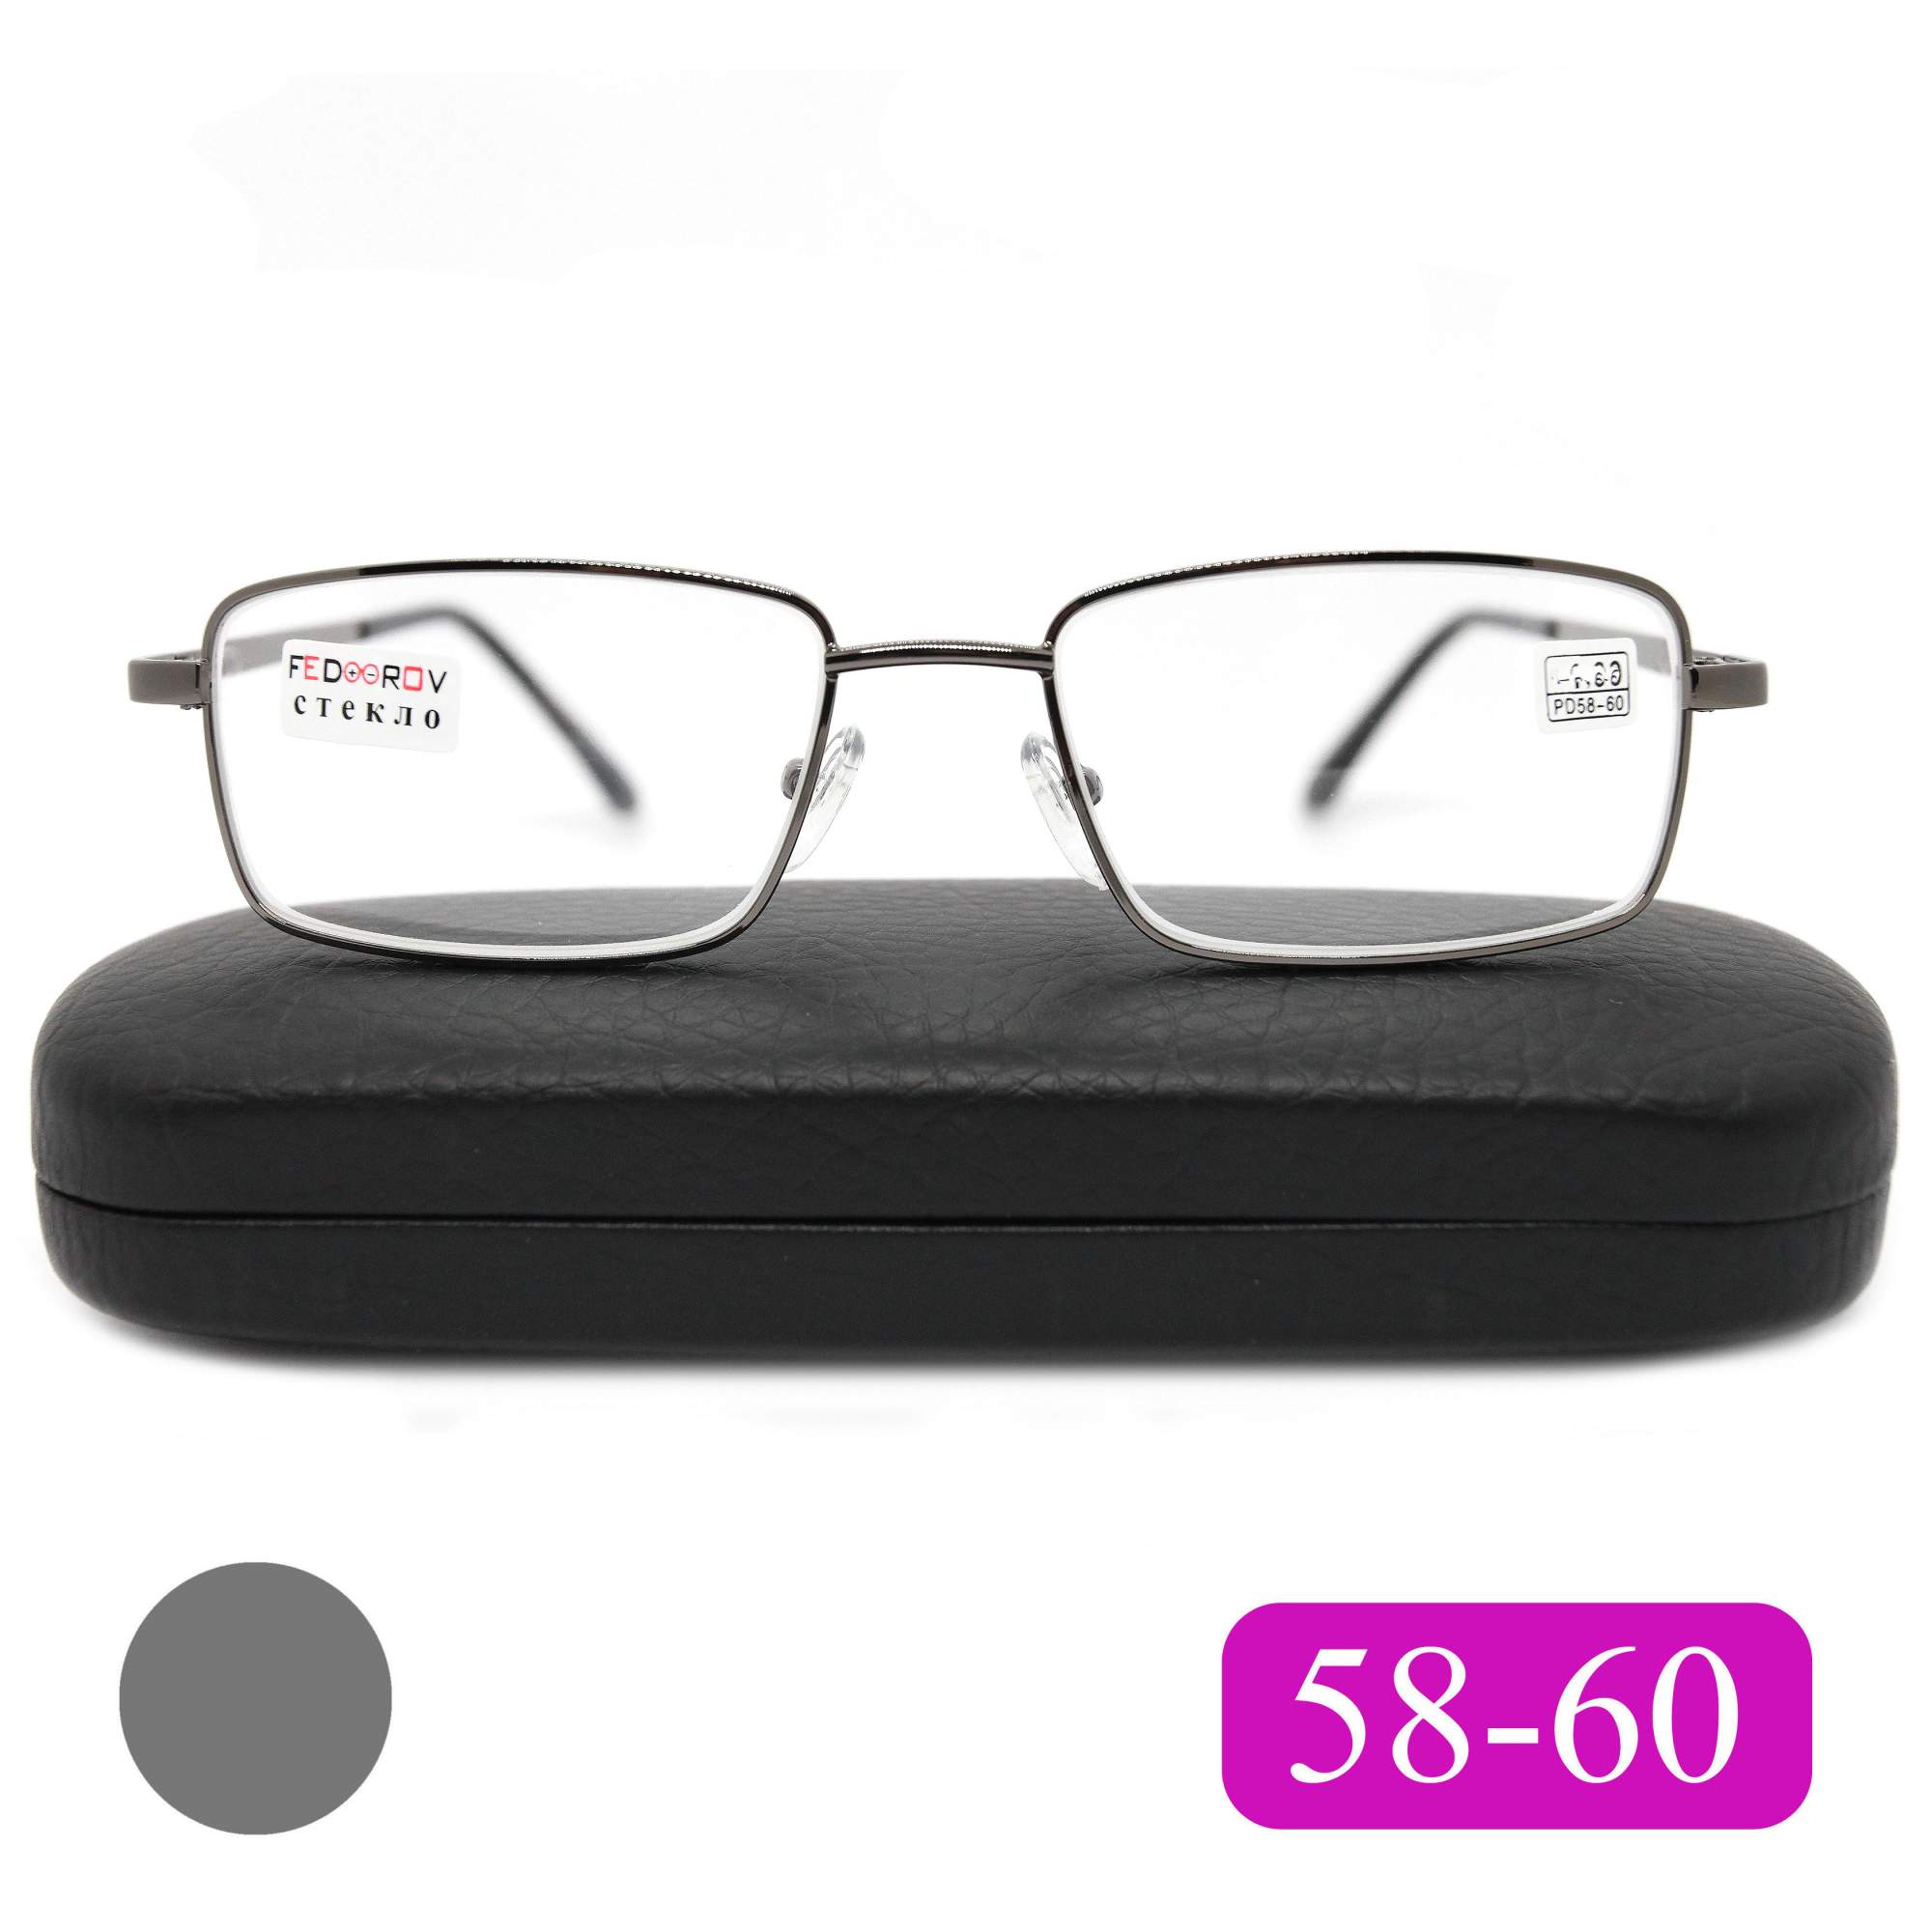 Готовые очки Fedrov 569, со стеклянной линзой, +3,00, c футляром, цвет серый, РЦ 58-60